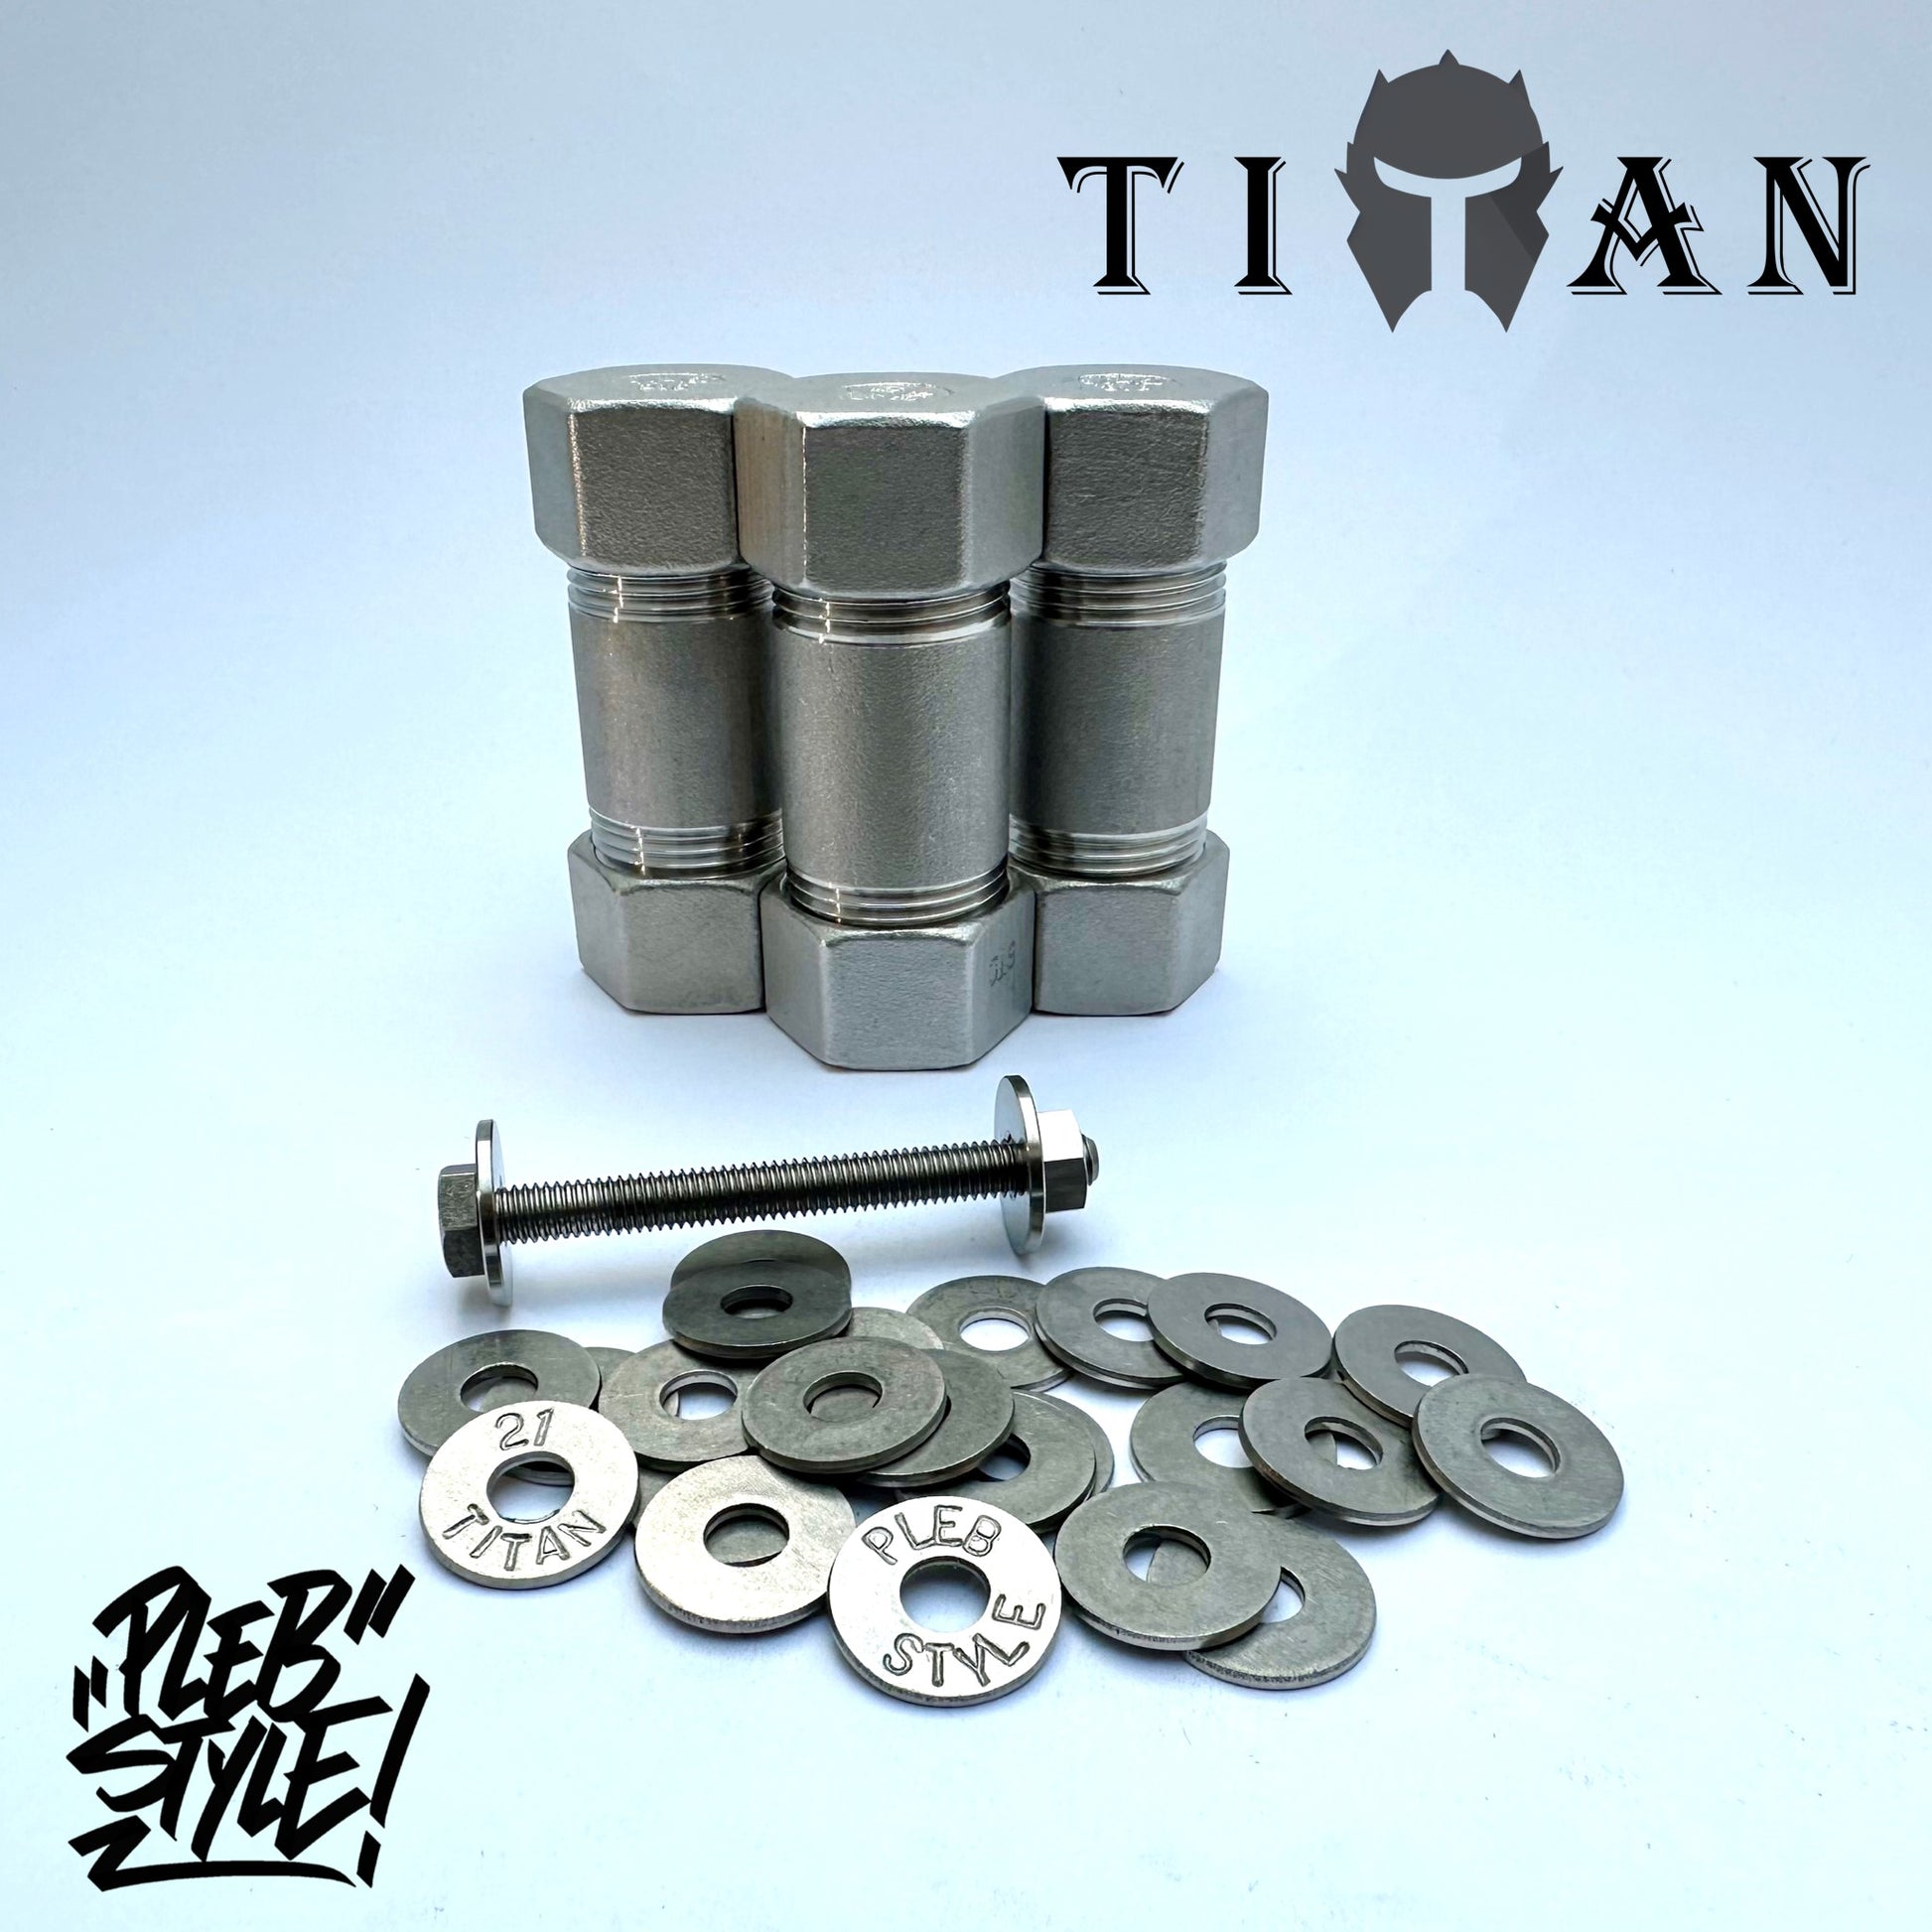 3x Titan Wallet by Plebstyle